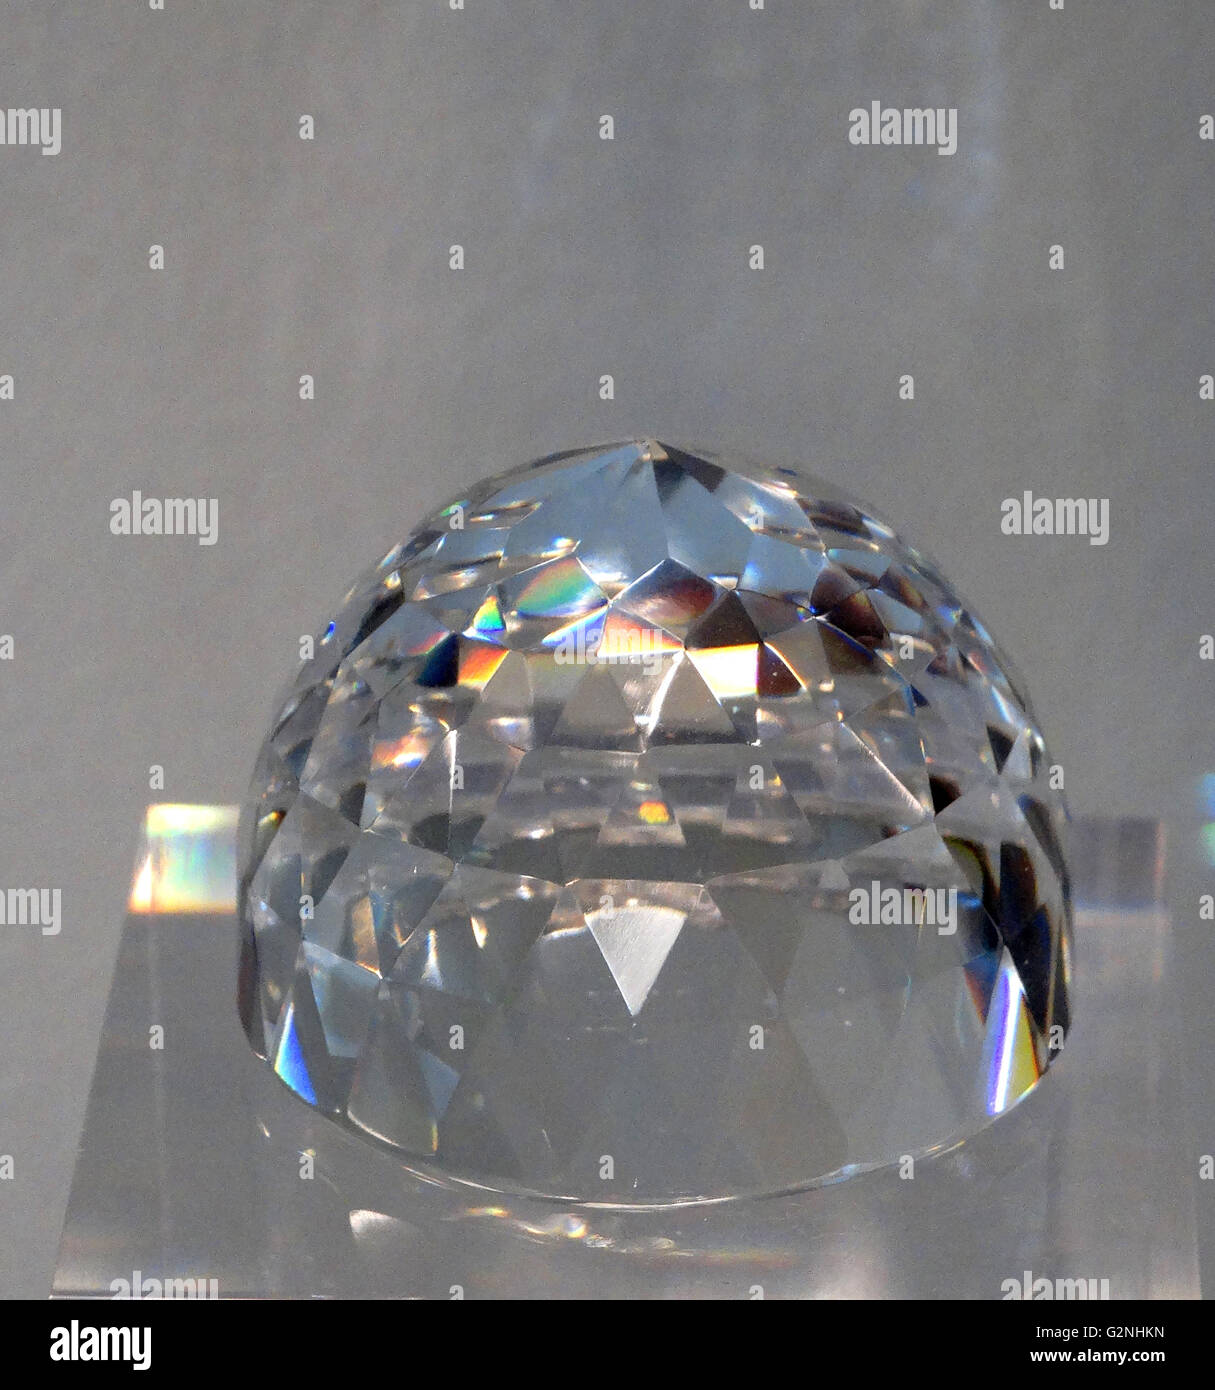 Le Diamant Orloff (parfois l'épeautre Orlov) est un grand diamant qui fait partie de la collection de la Diamond Fund du Kremlin de Moscou. Son origine - décrit comme ayant la forme et les proportions de la moitié d'un oeuf de poule. Datée 2014 Banque D'Images